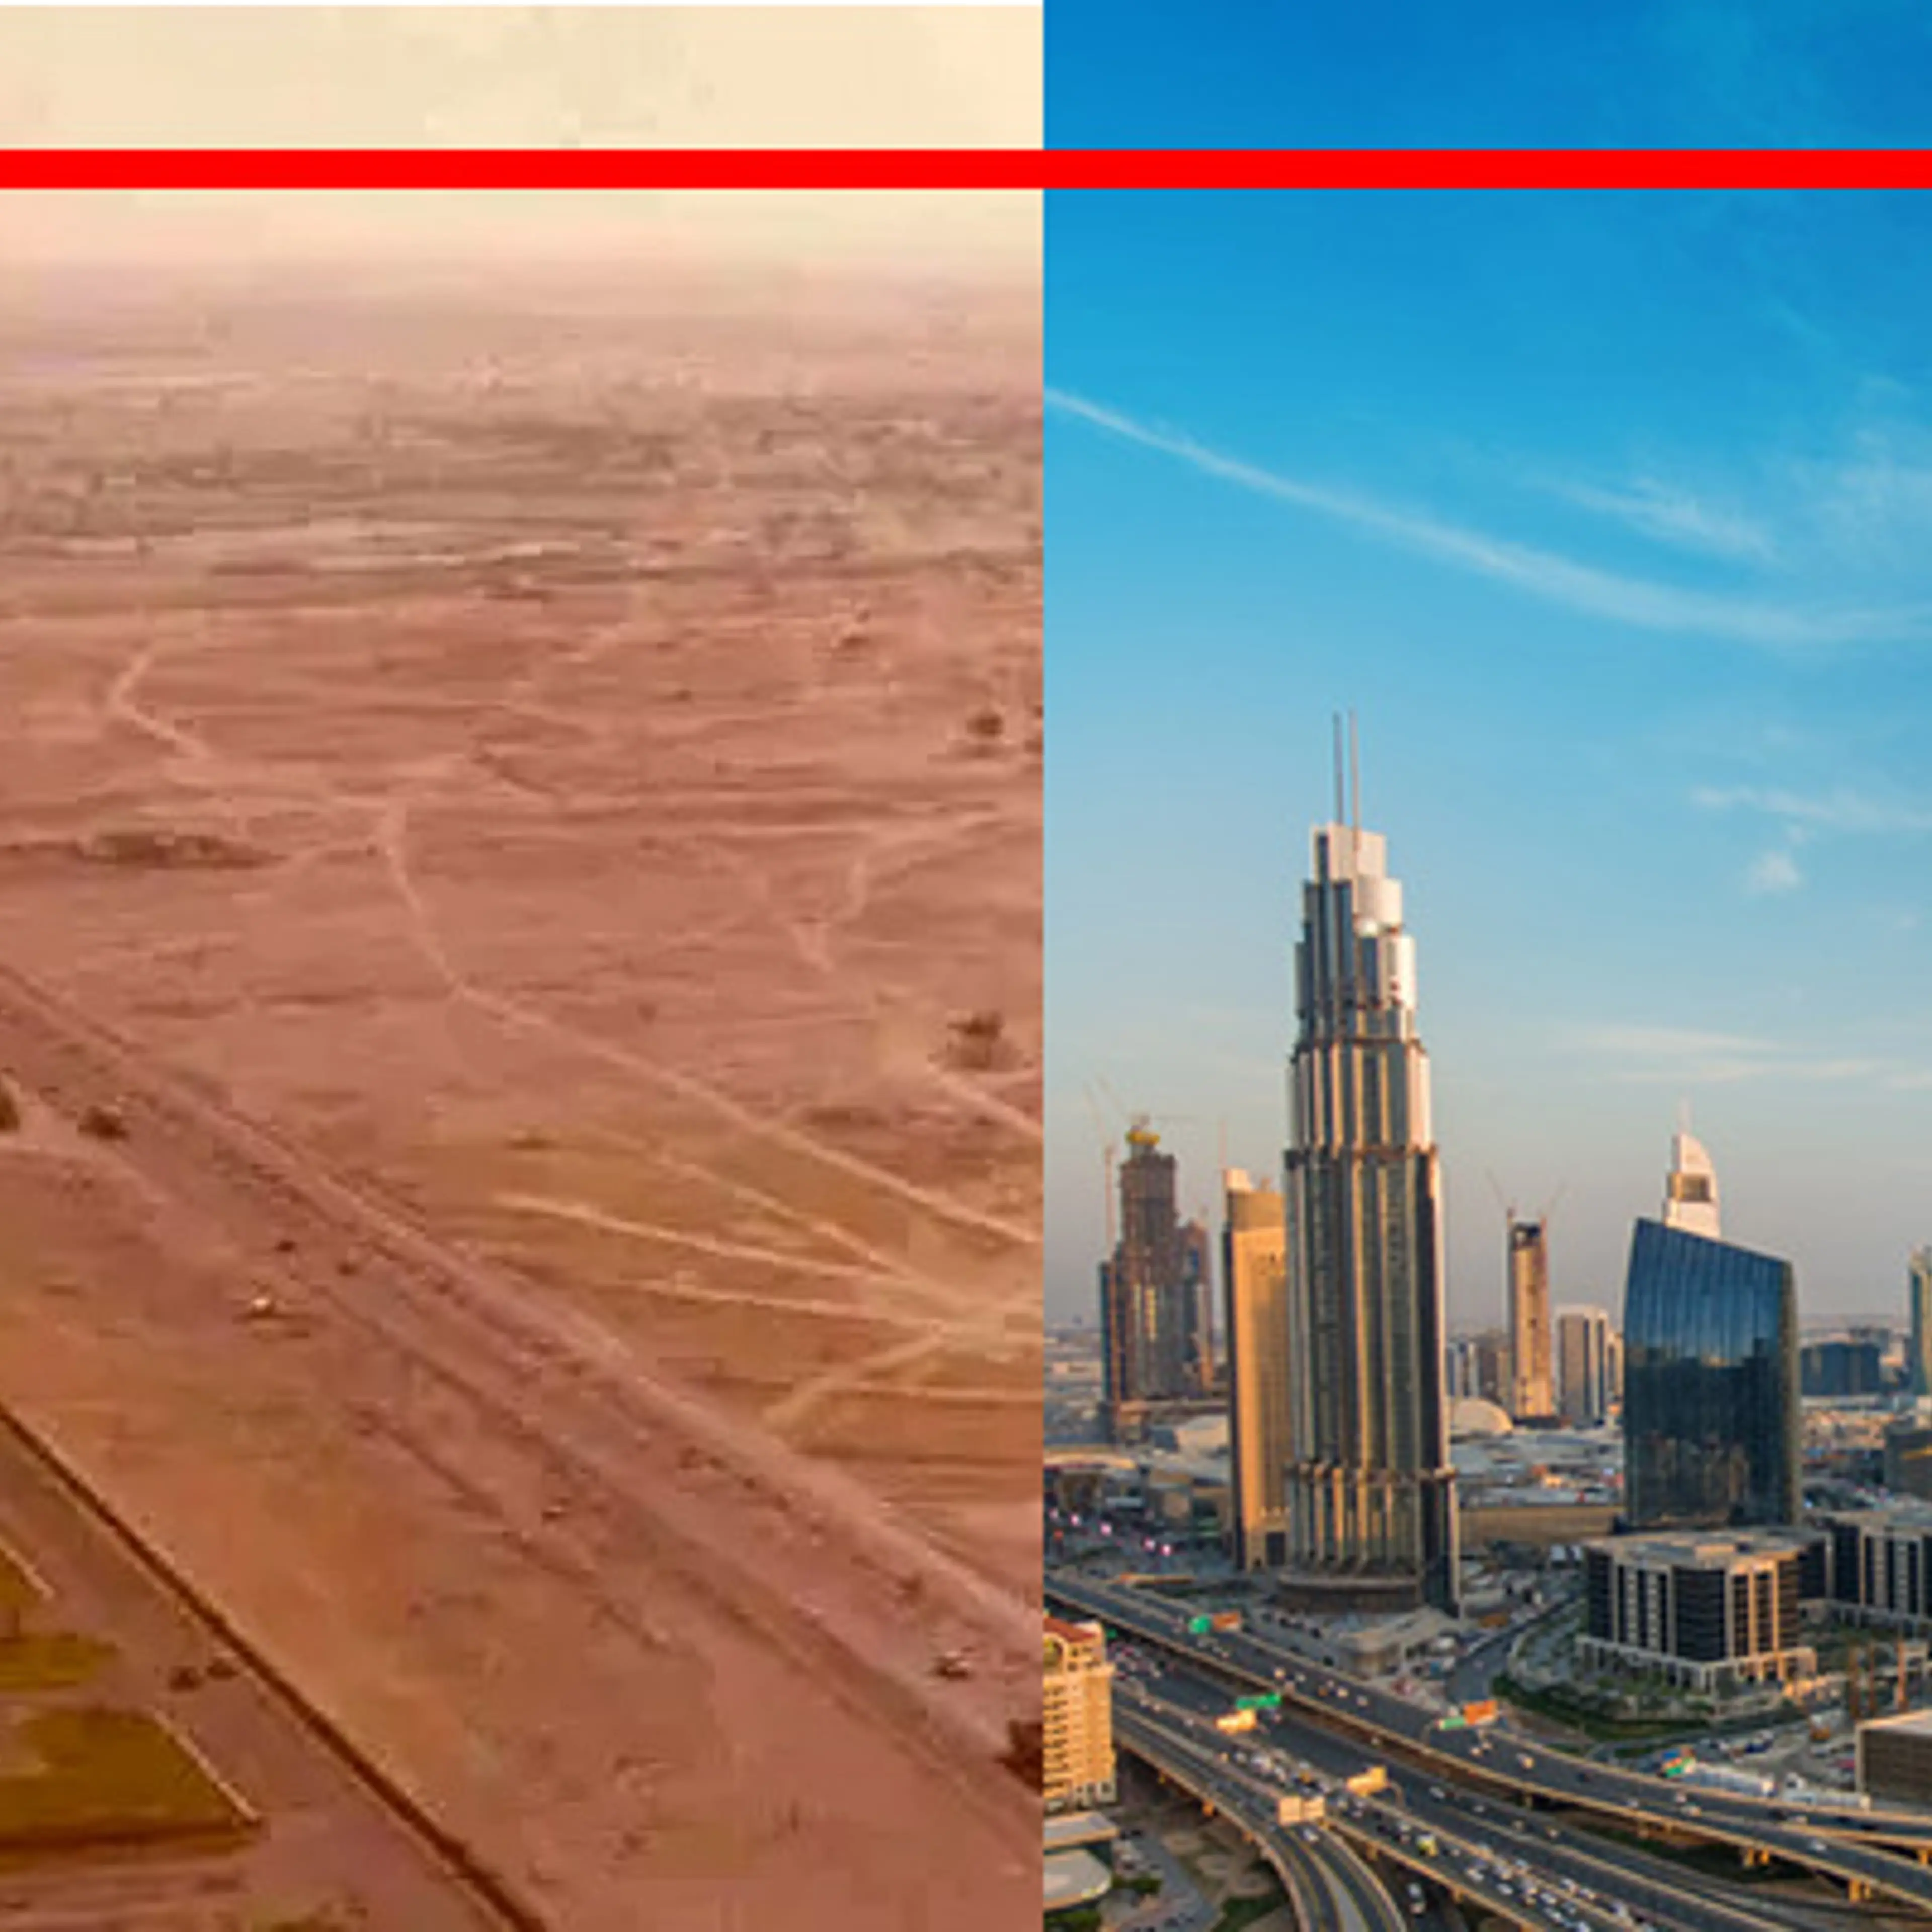 कभी एक रेत के मैदान से ज्यादा कुछ नहीं था दुबई, जानिए फिर कैसे बन गया इतना अमीर